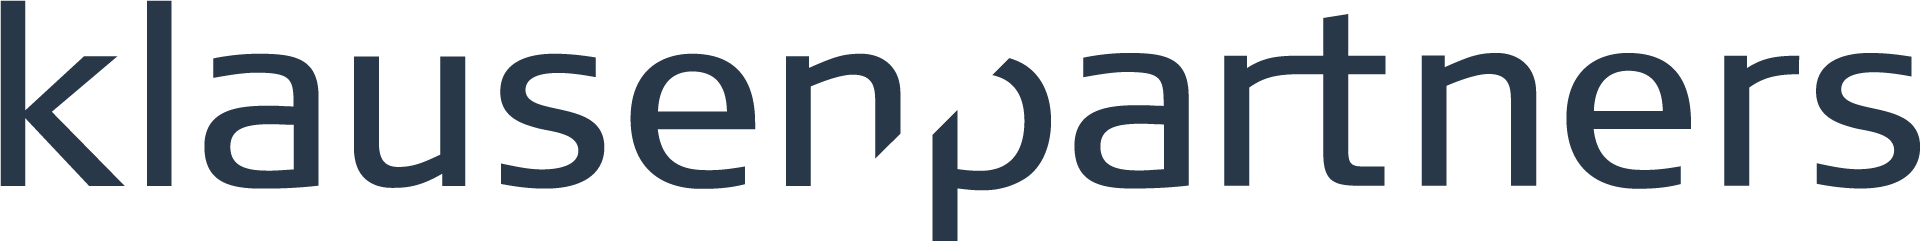 Klausen og Partners logo